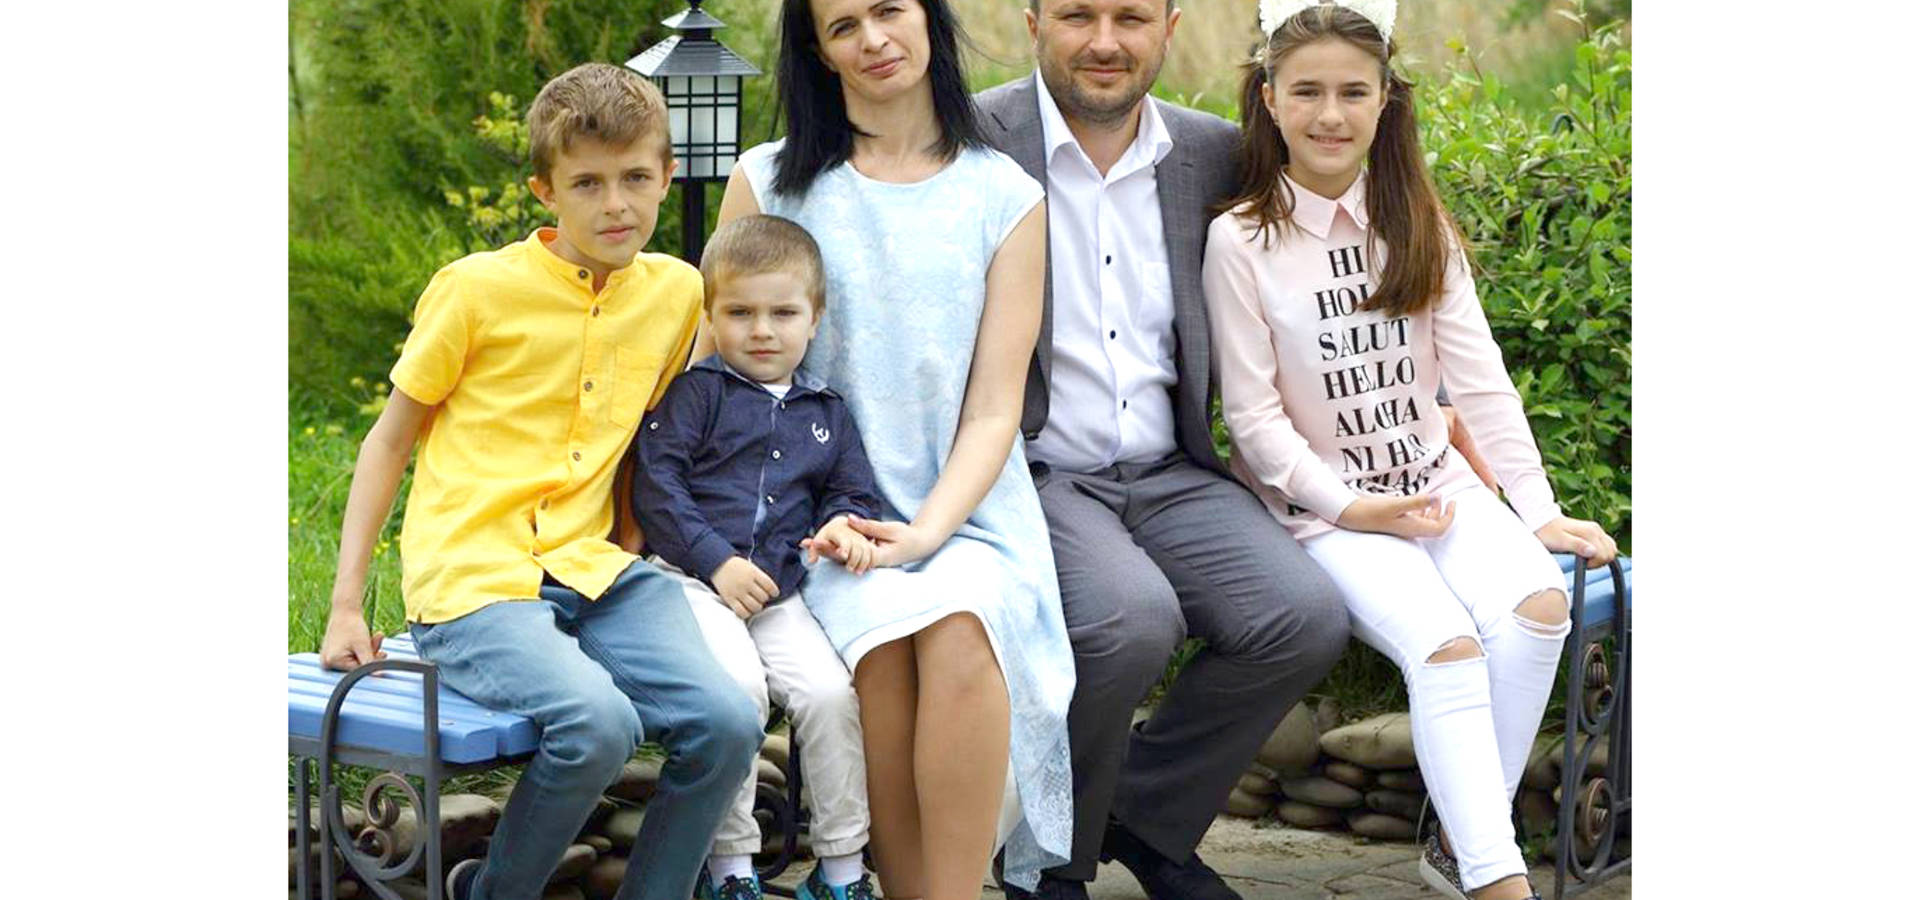 Олександр Крученюк: "Сім'я для мене це сокровенне, це сенс мого життя"